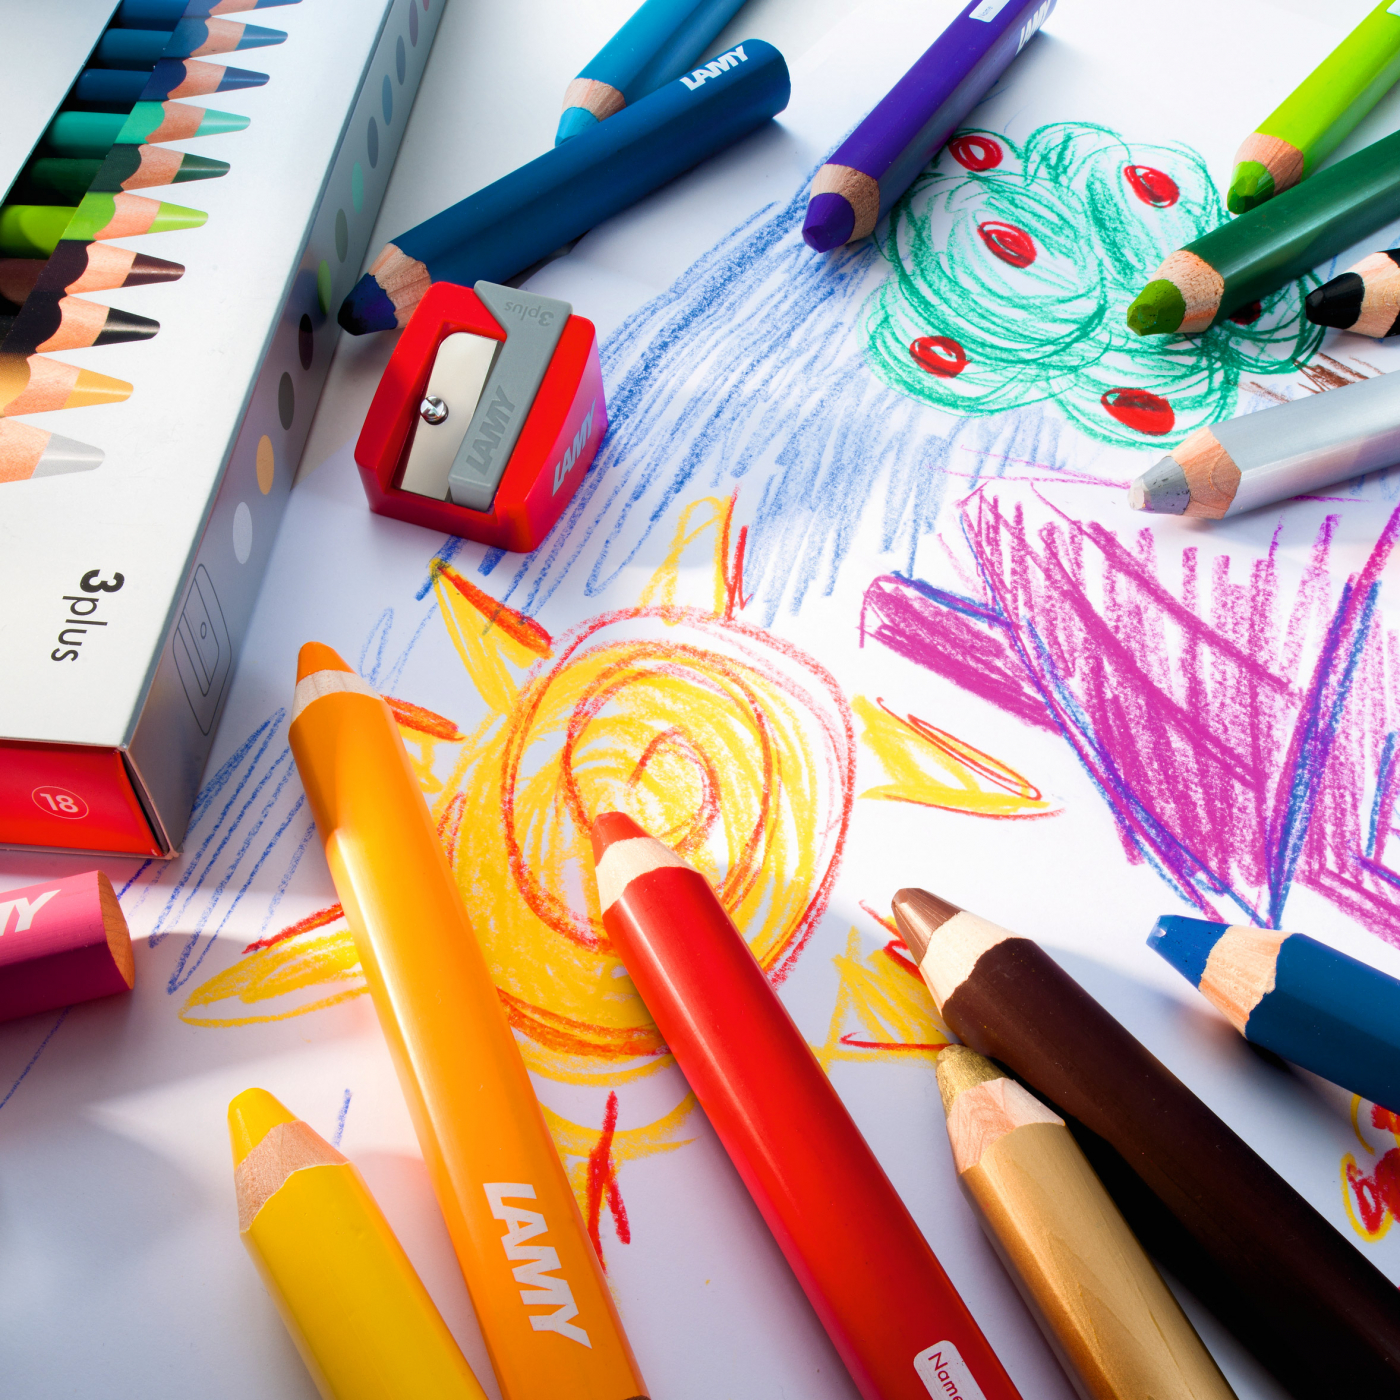 Crayons de couleur 3plus (+3 ans) Lot de 12 dans le groupe Kids / Crayons pours les enfants / 3 ans + chez Pen Store (101782)